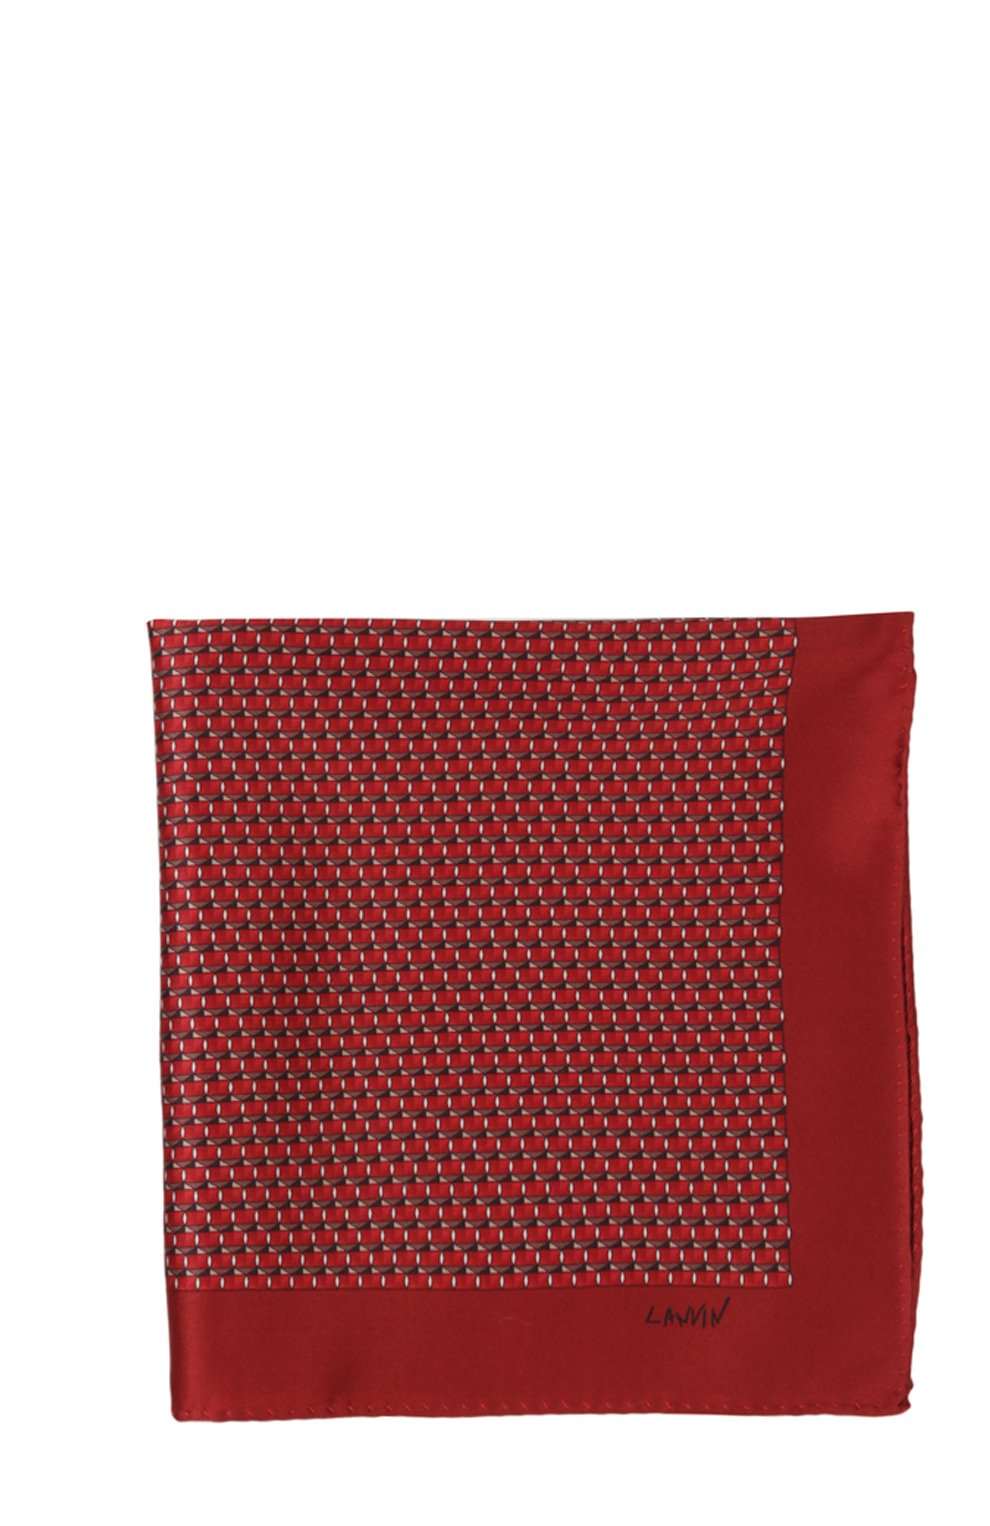 Мужской комплект из галстука и платка LANVIN красного цвета, арт. 4228 | Фото 2 (Материал: Текстиль, Шелк)